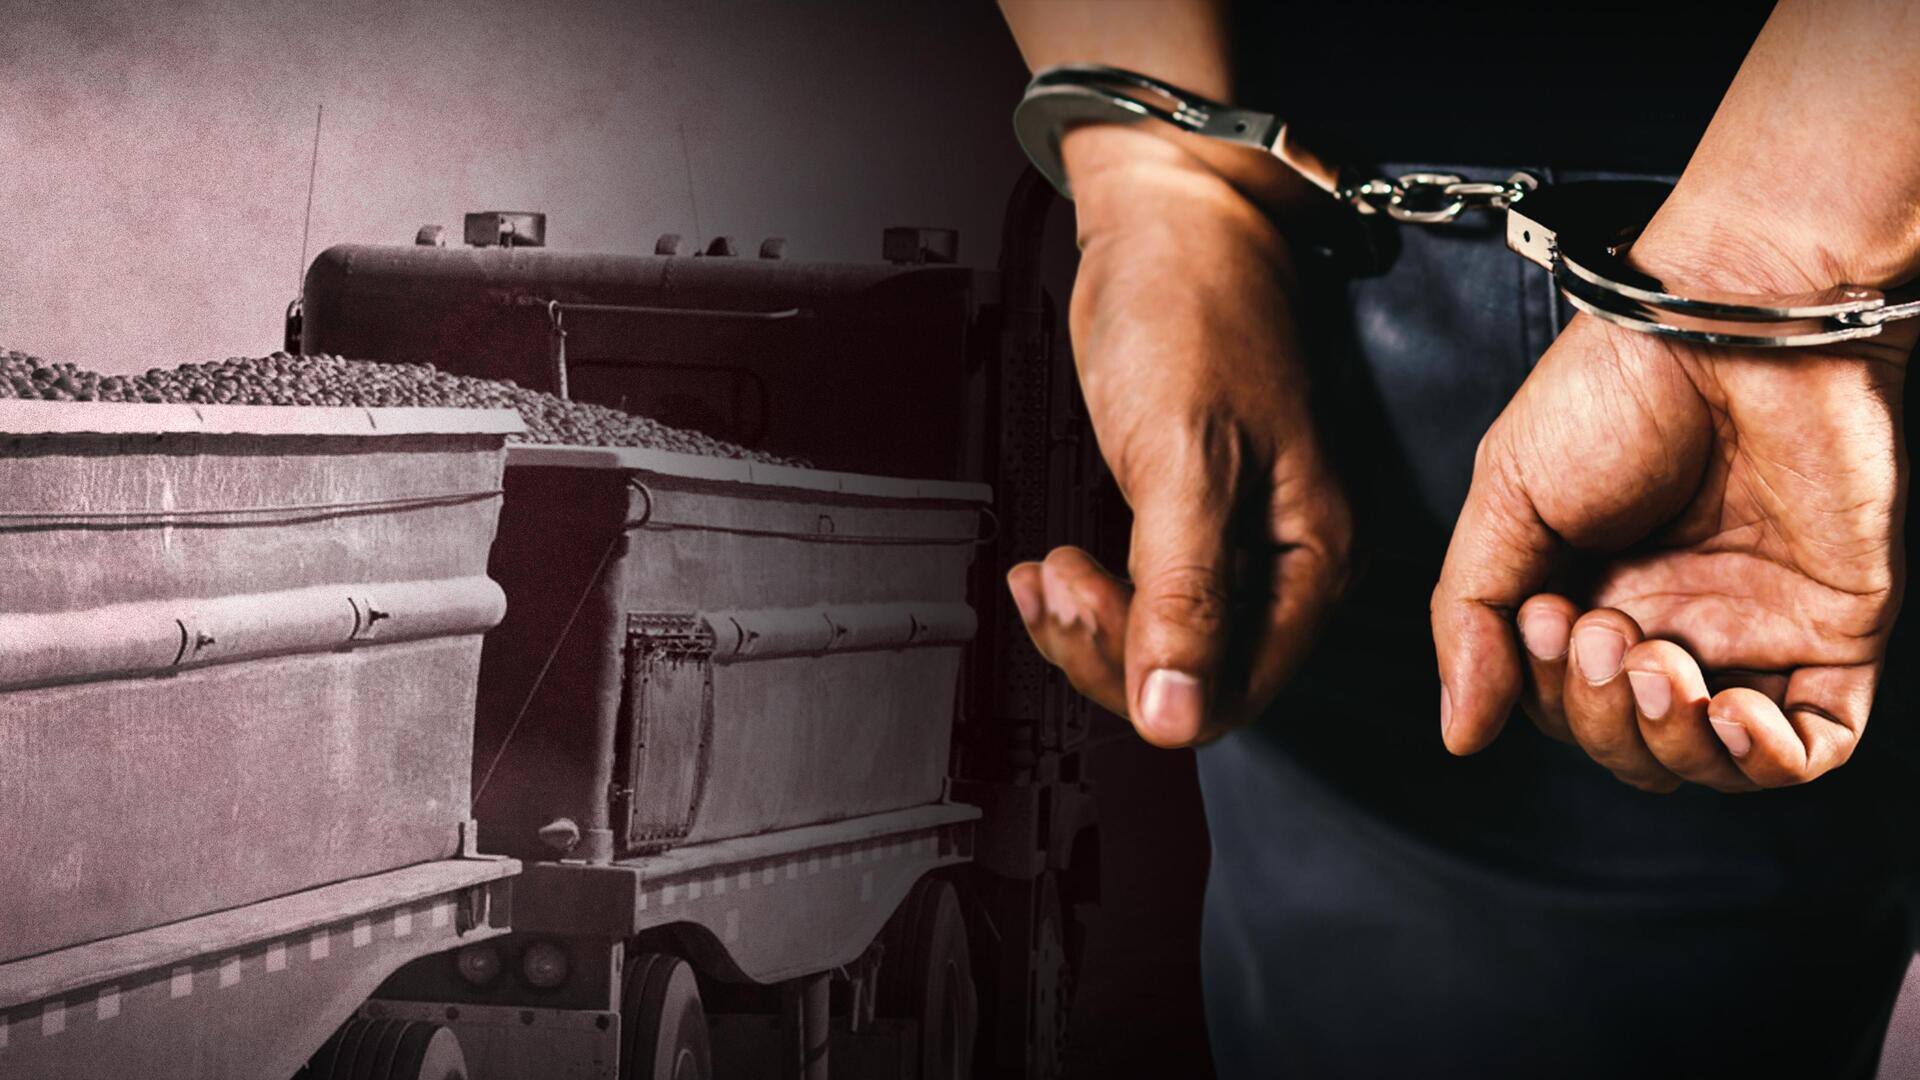 बेंगलुरू: दुर्घटना का नाटक करके दंपति ने की टमाटरों से लदे ट्रक की चोरी, गिरफ्तार